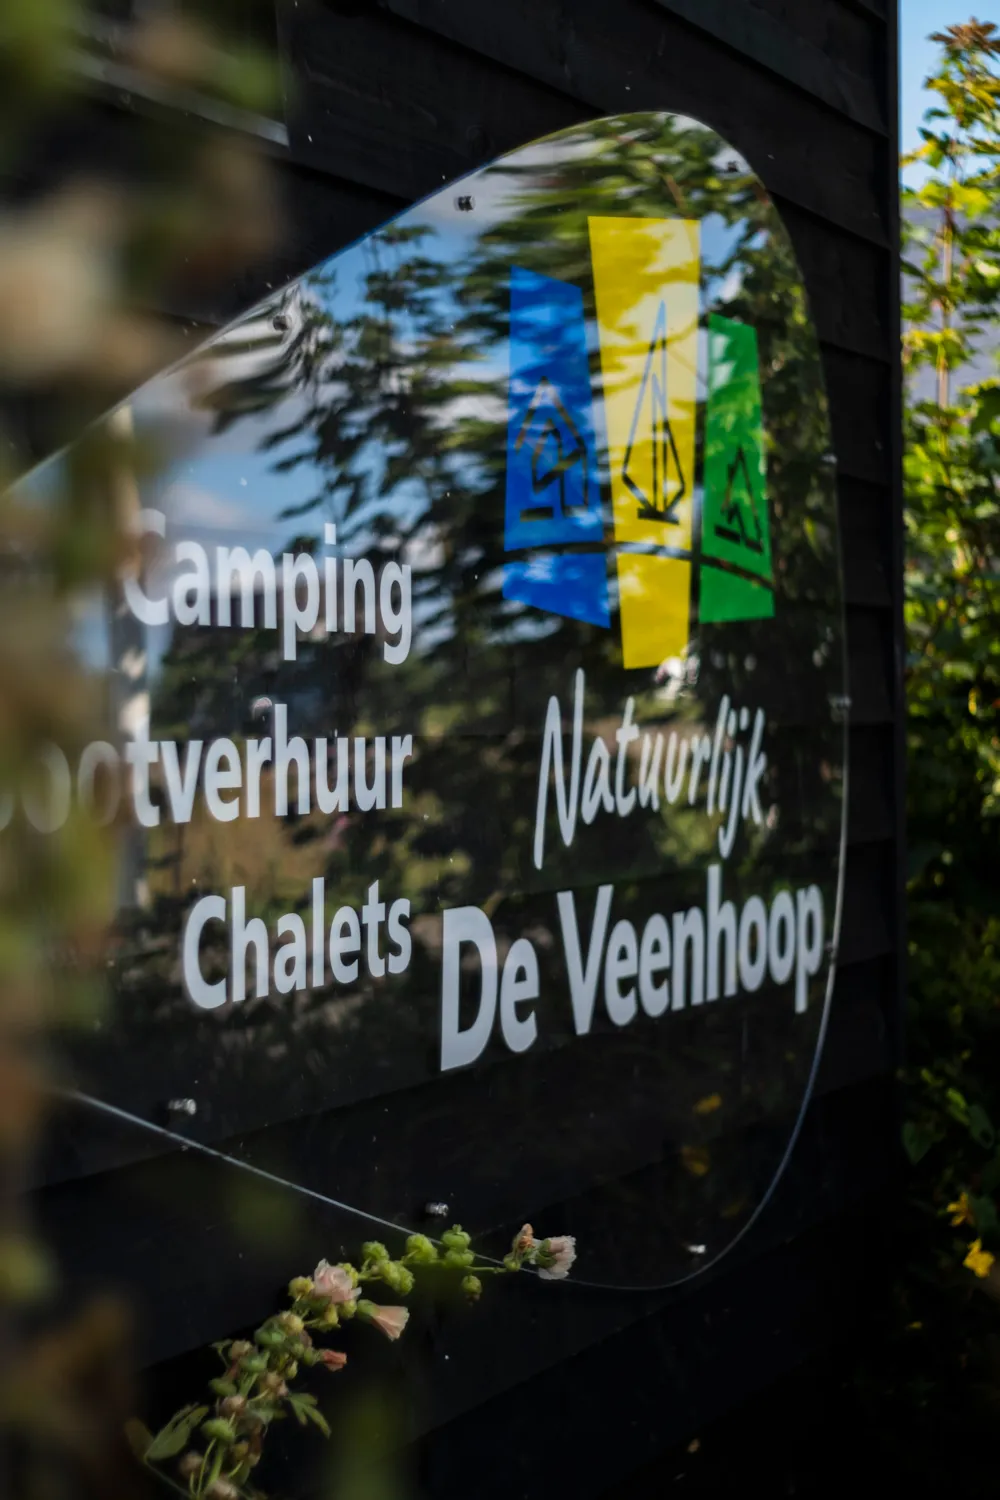 Natuurlijk de Veenhoop - image n°10 - Camping Direct